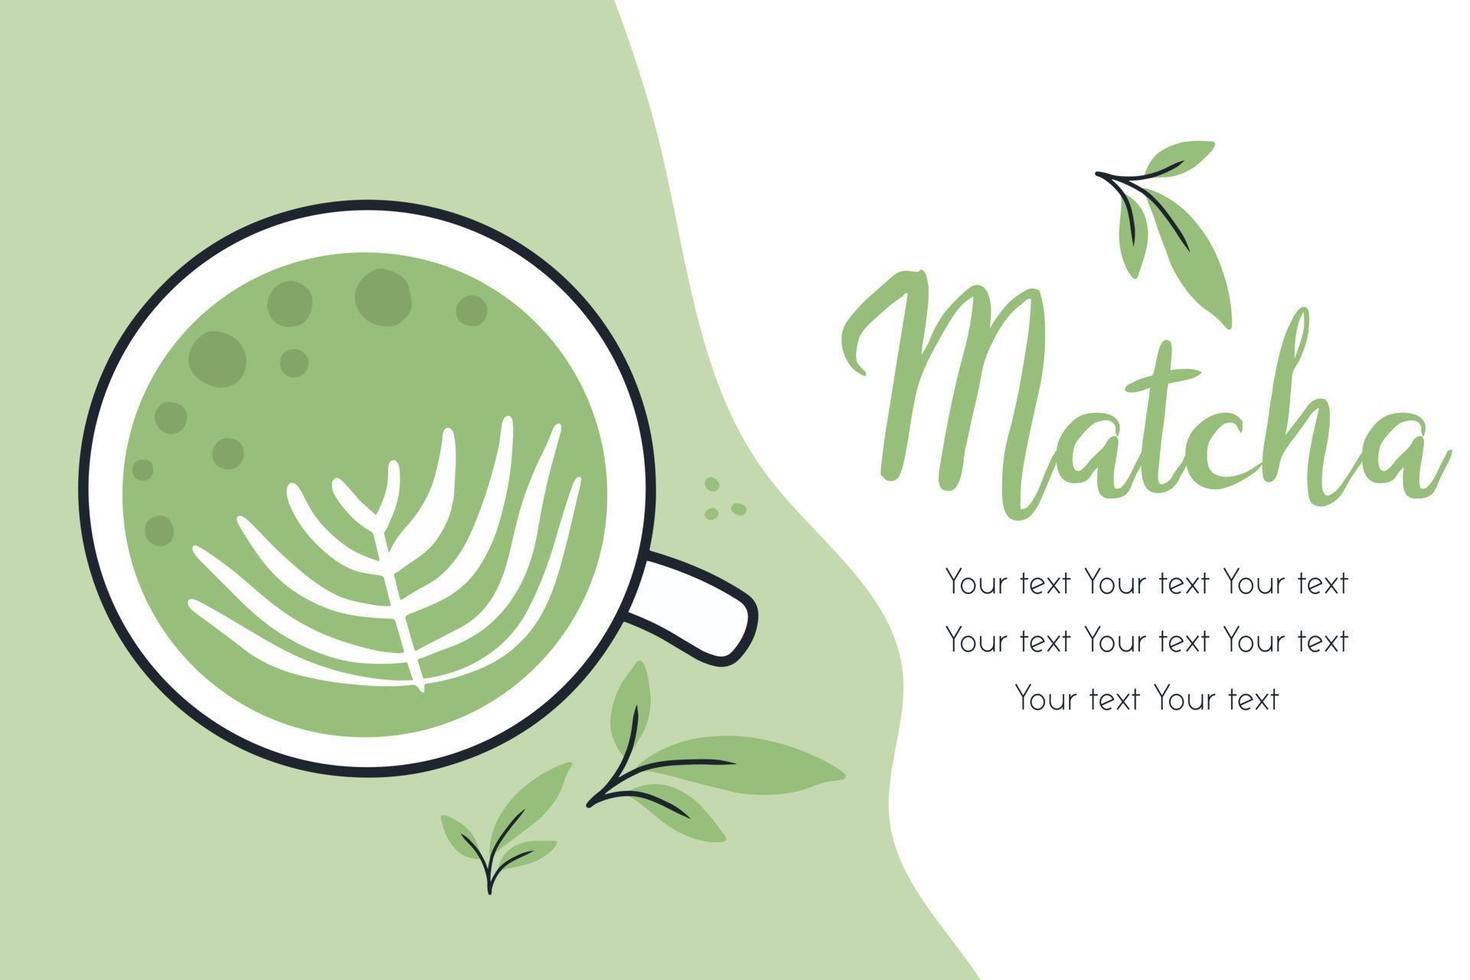 flyer met matcha-thee. vectorillustratie met groene thee. mok met matcha latte. poster met groene matcha mug.doodle-stijl. vector